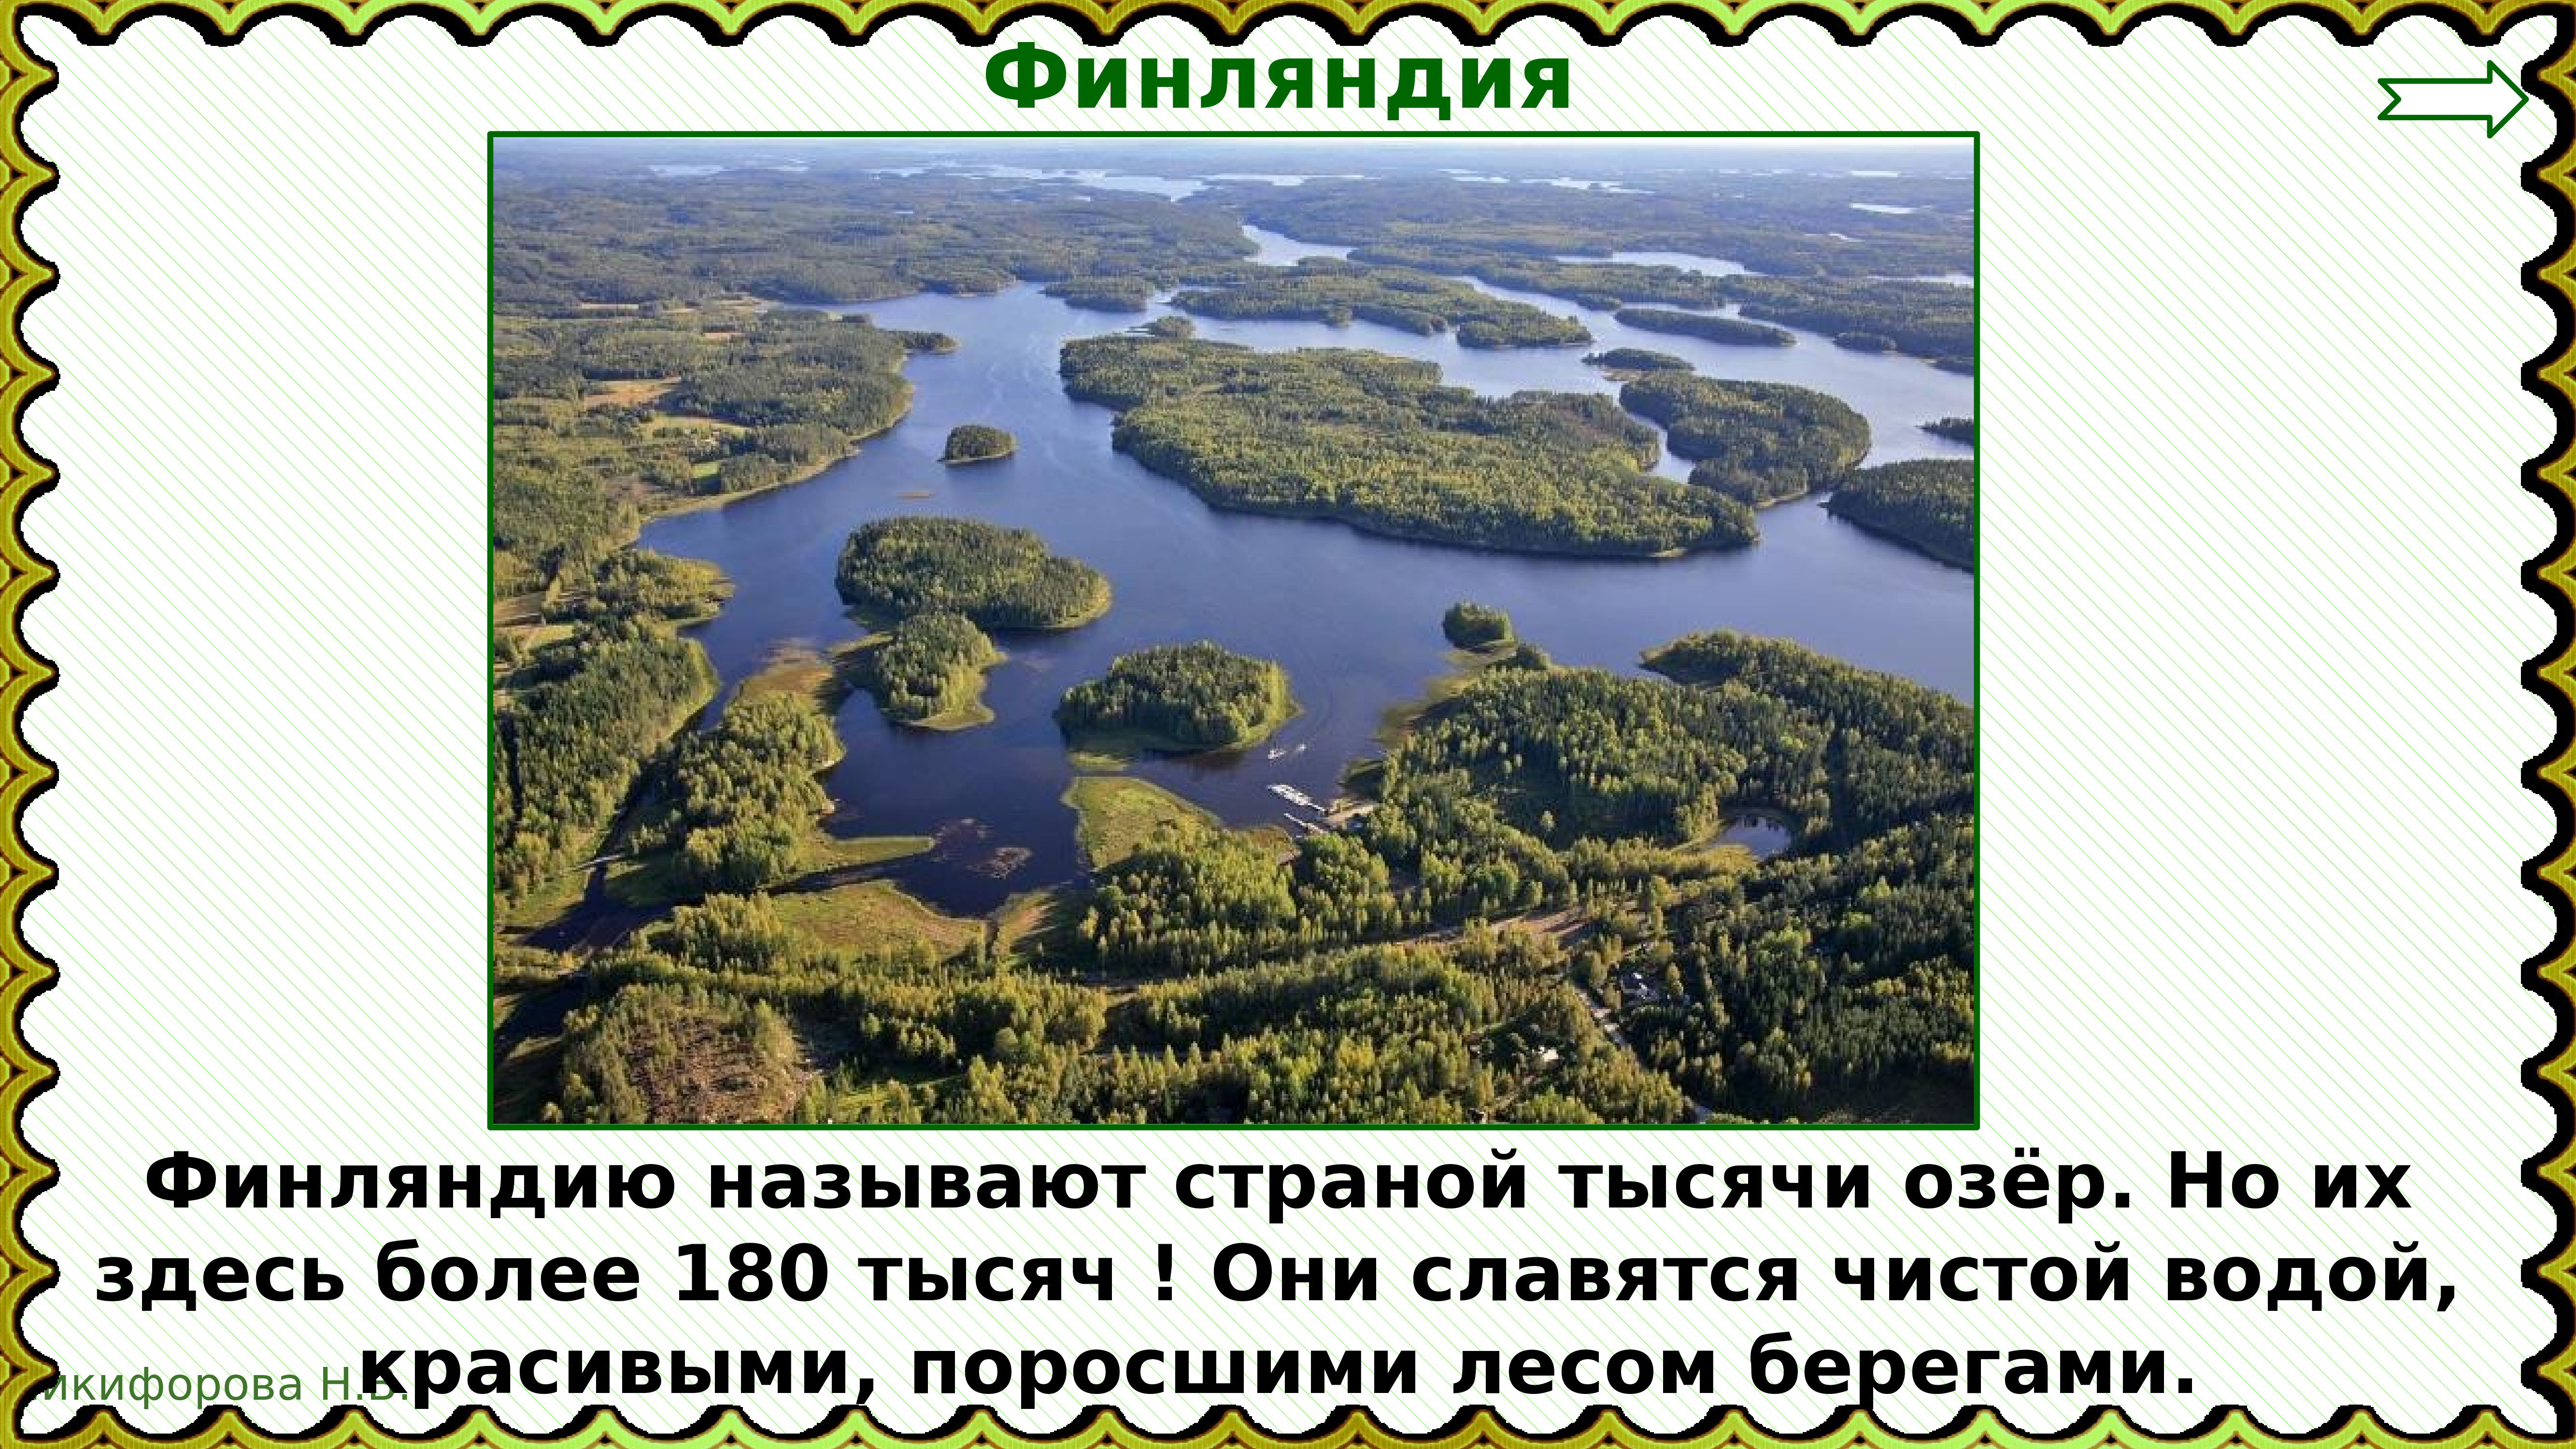 Какую страну называют страной 1000 озер. Страной тысячи озер называют. Назовите страну тысячи озер.. Финляндия 1000 озер. Финляндию называют страной 1000 озер.